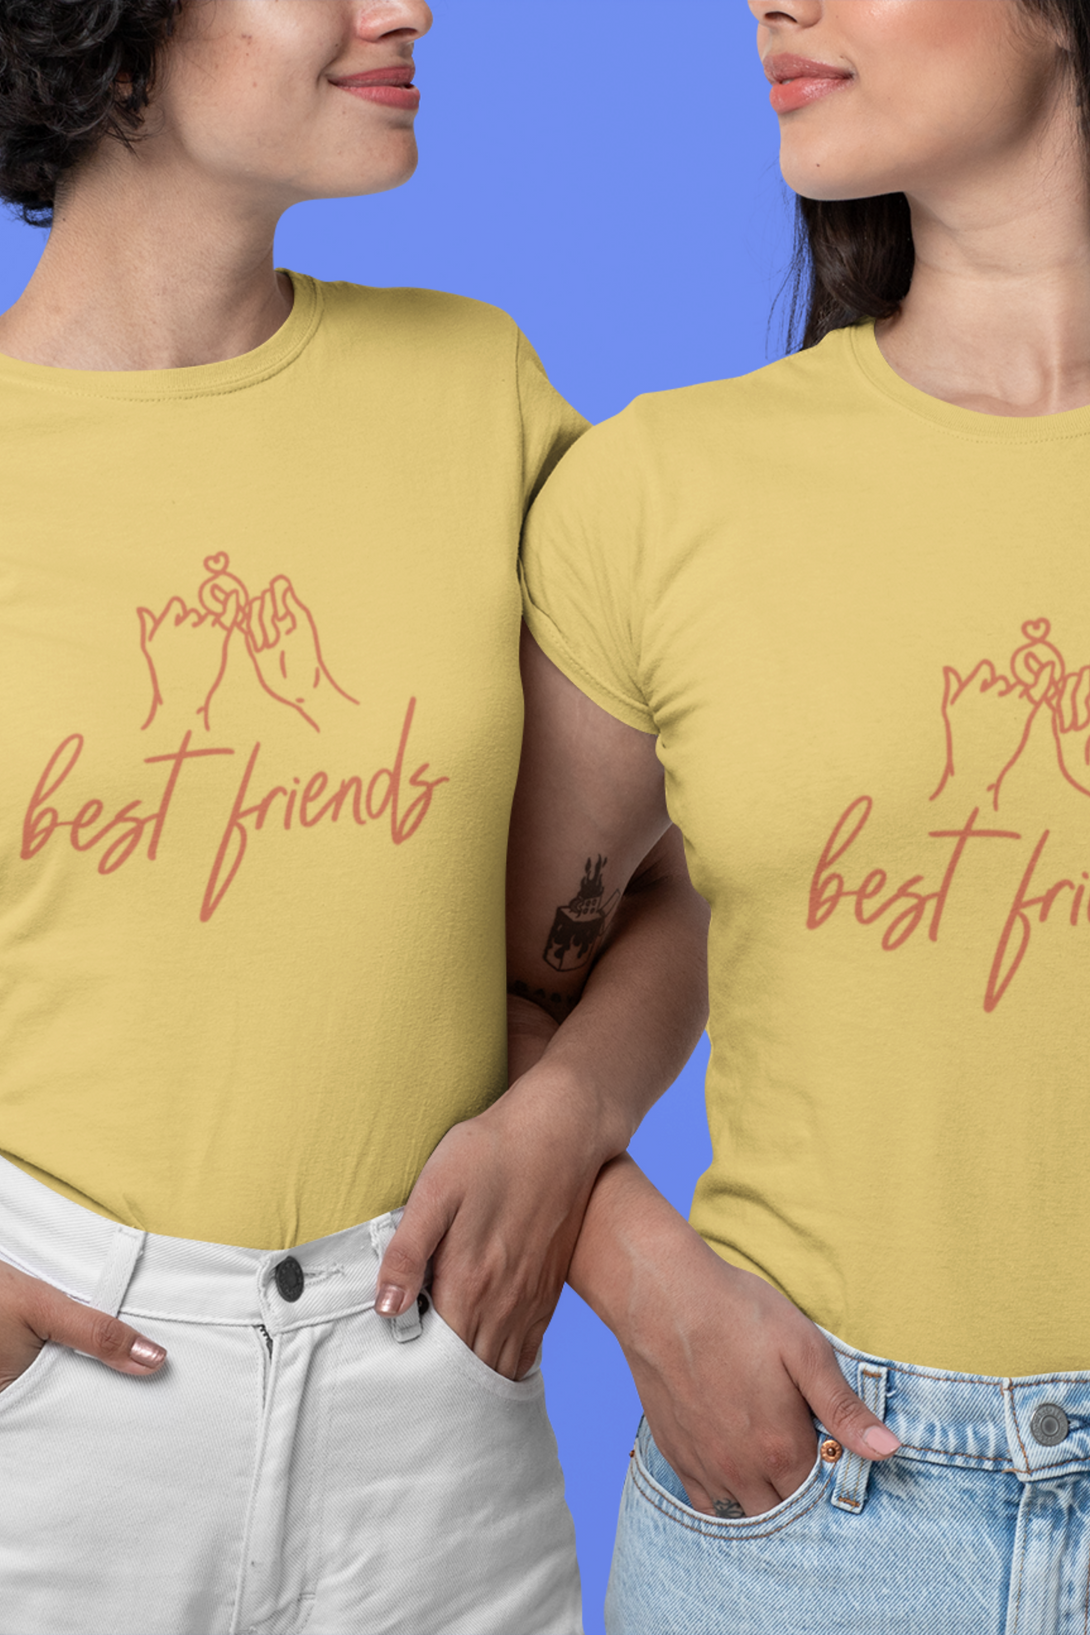 Best Friends Printed T-Shirt For Women - WowWaves - 5